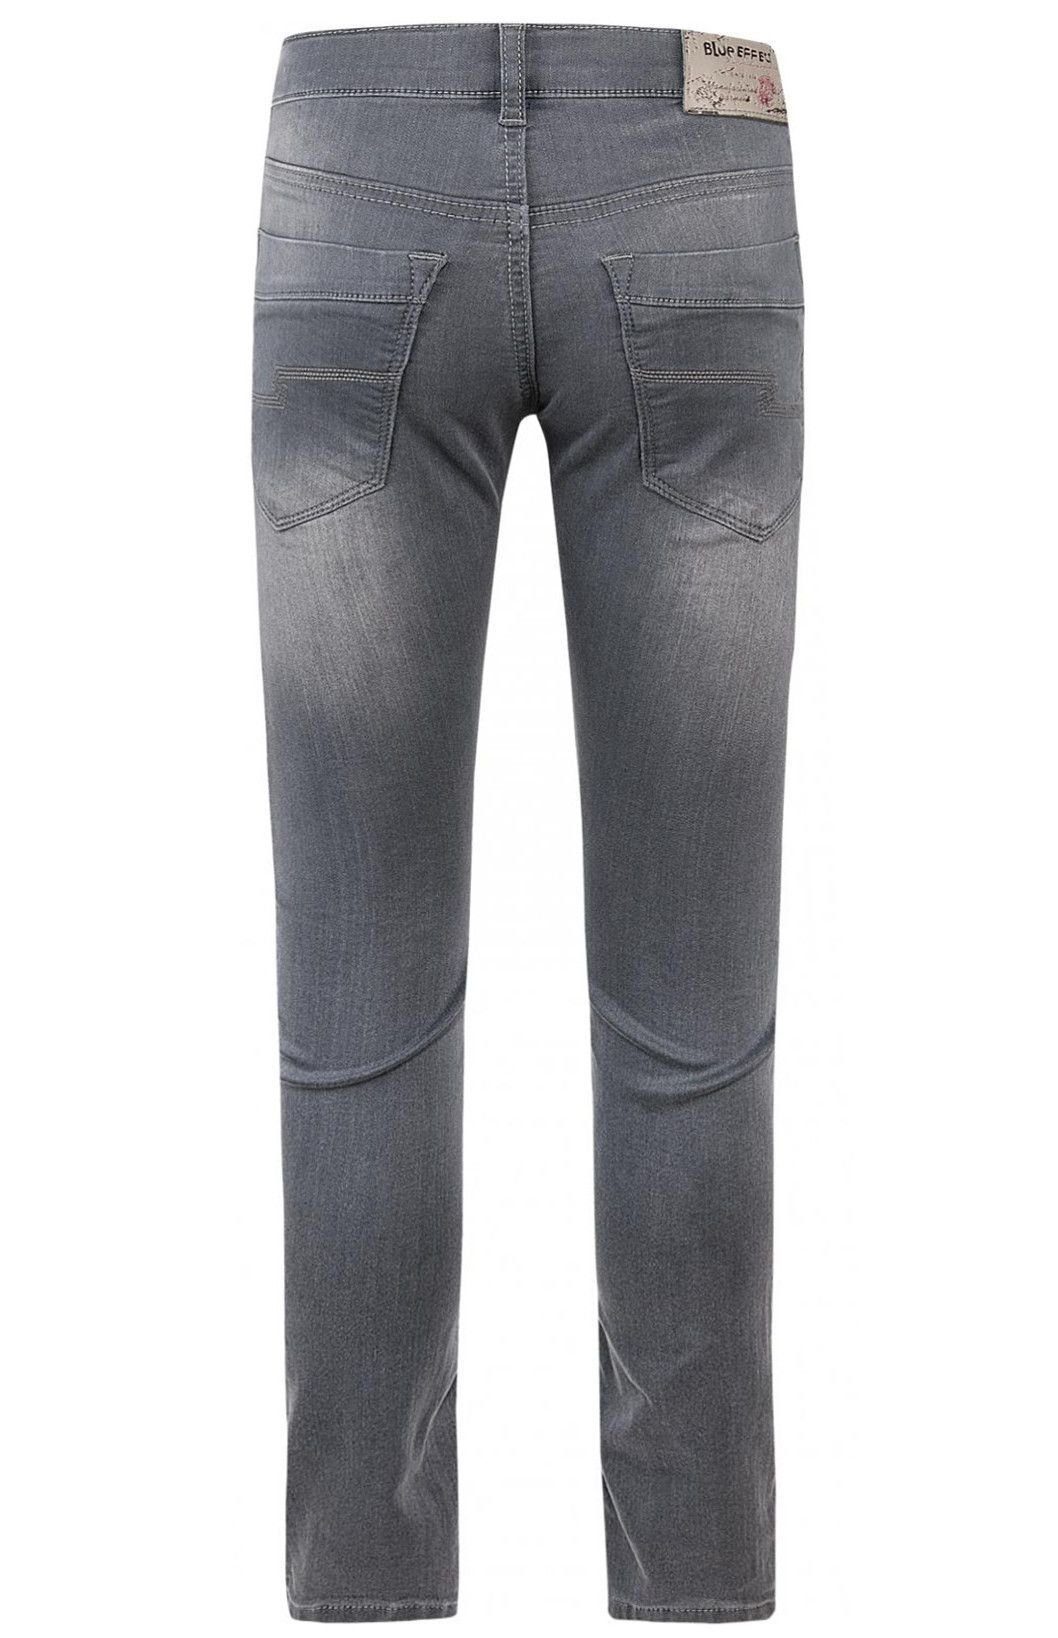 Jeans Regular-fit-Jeans EFFECT dark grey Hose Skinny fit regular BLUE ultrastretch